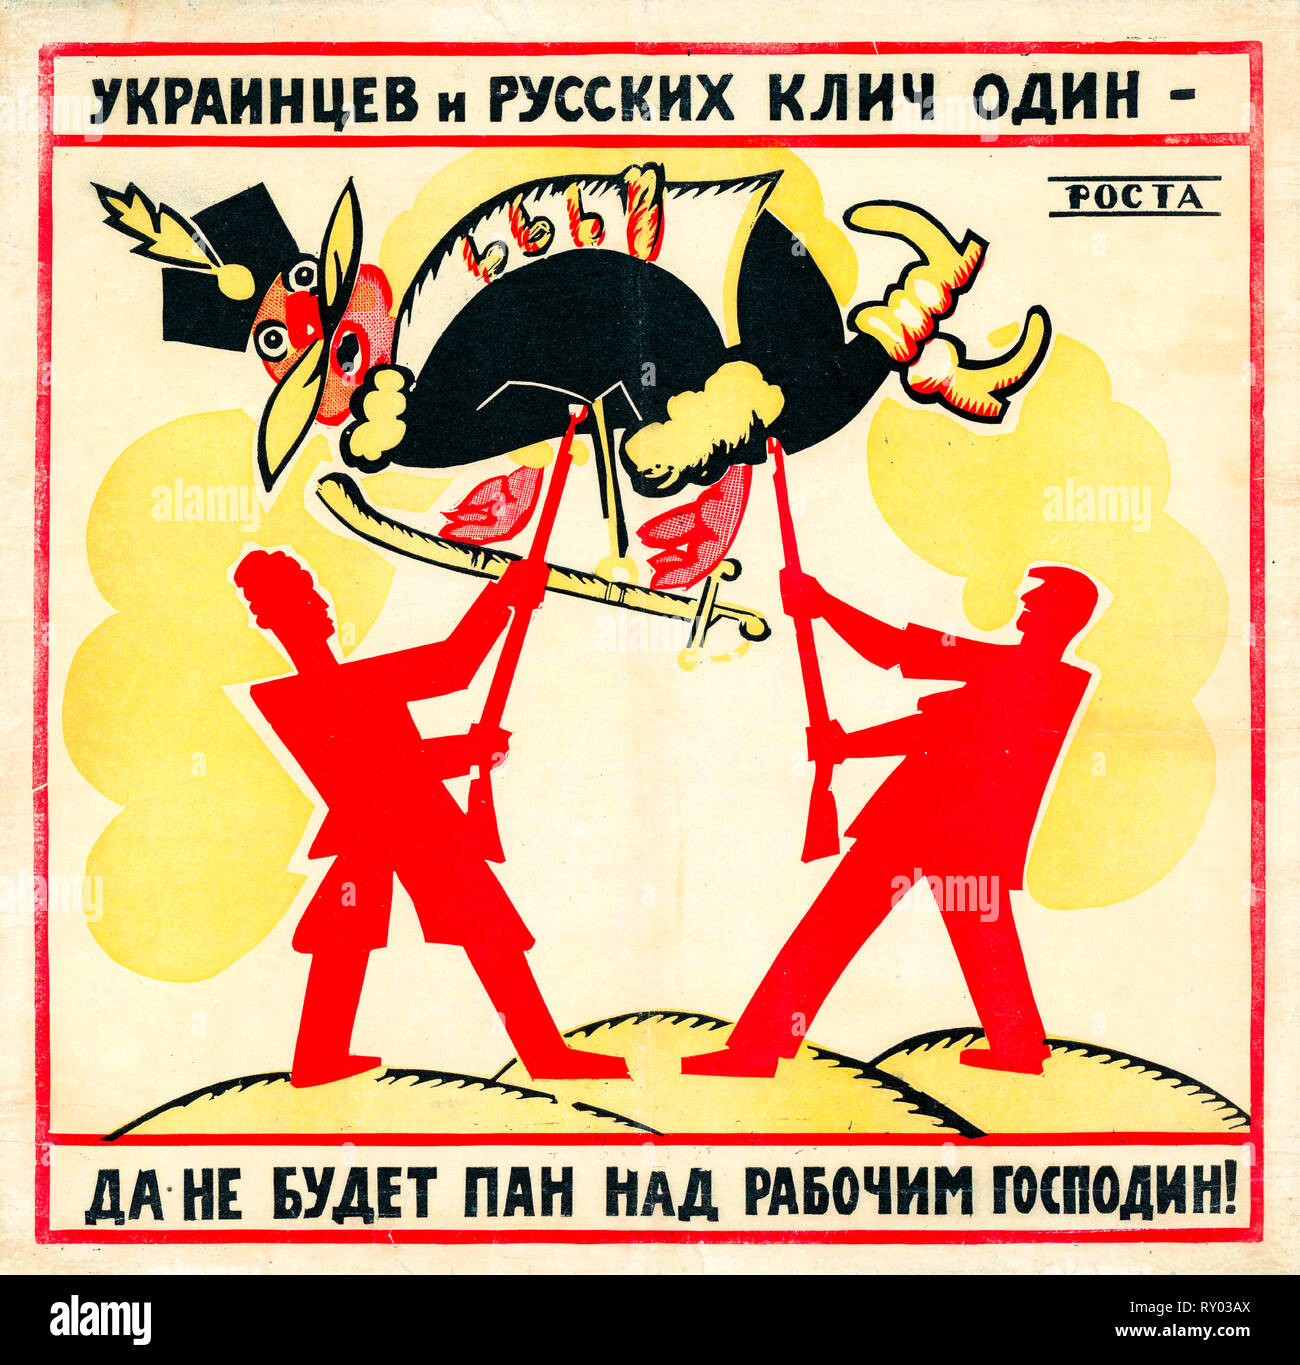 Affiche de propagande soviétique, les Ukrainiens et les Russes ont un cri, il ne peut pas être un maître sur le travailleur Mister !, Rivoli, 1920 Banque D'Images